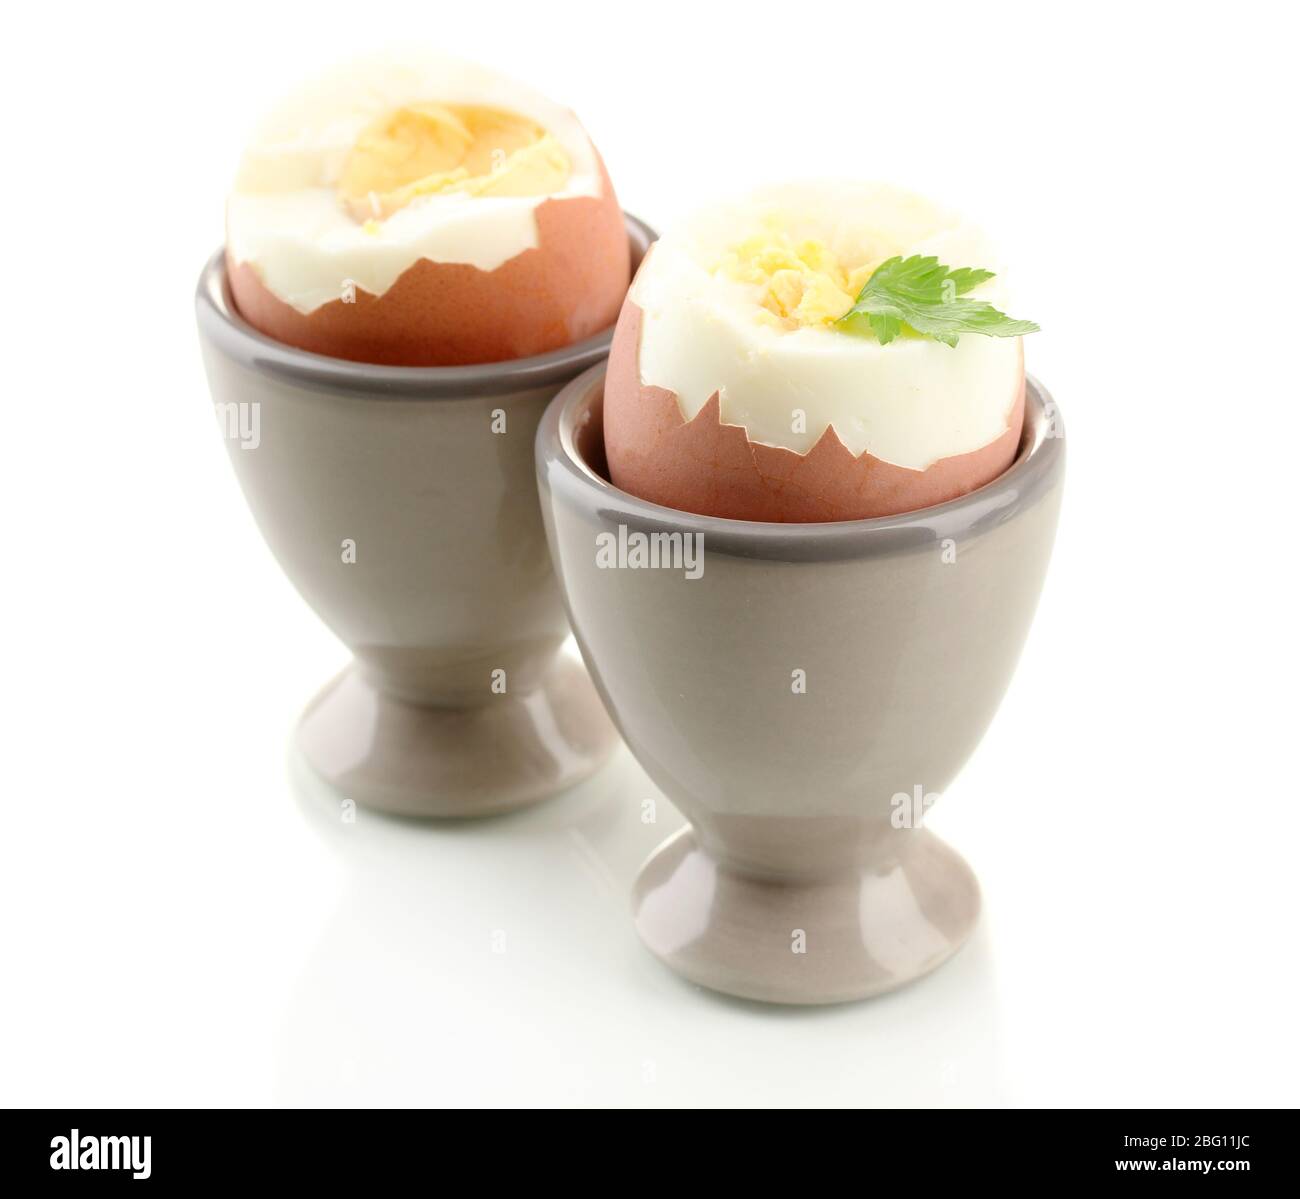 https://c8.alamy.com/comp/2BG11JC/boiled-eggs-in-egg-cup-isolated-on-white-2BG11JC.jpg